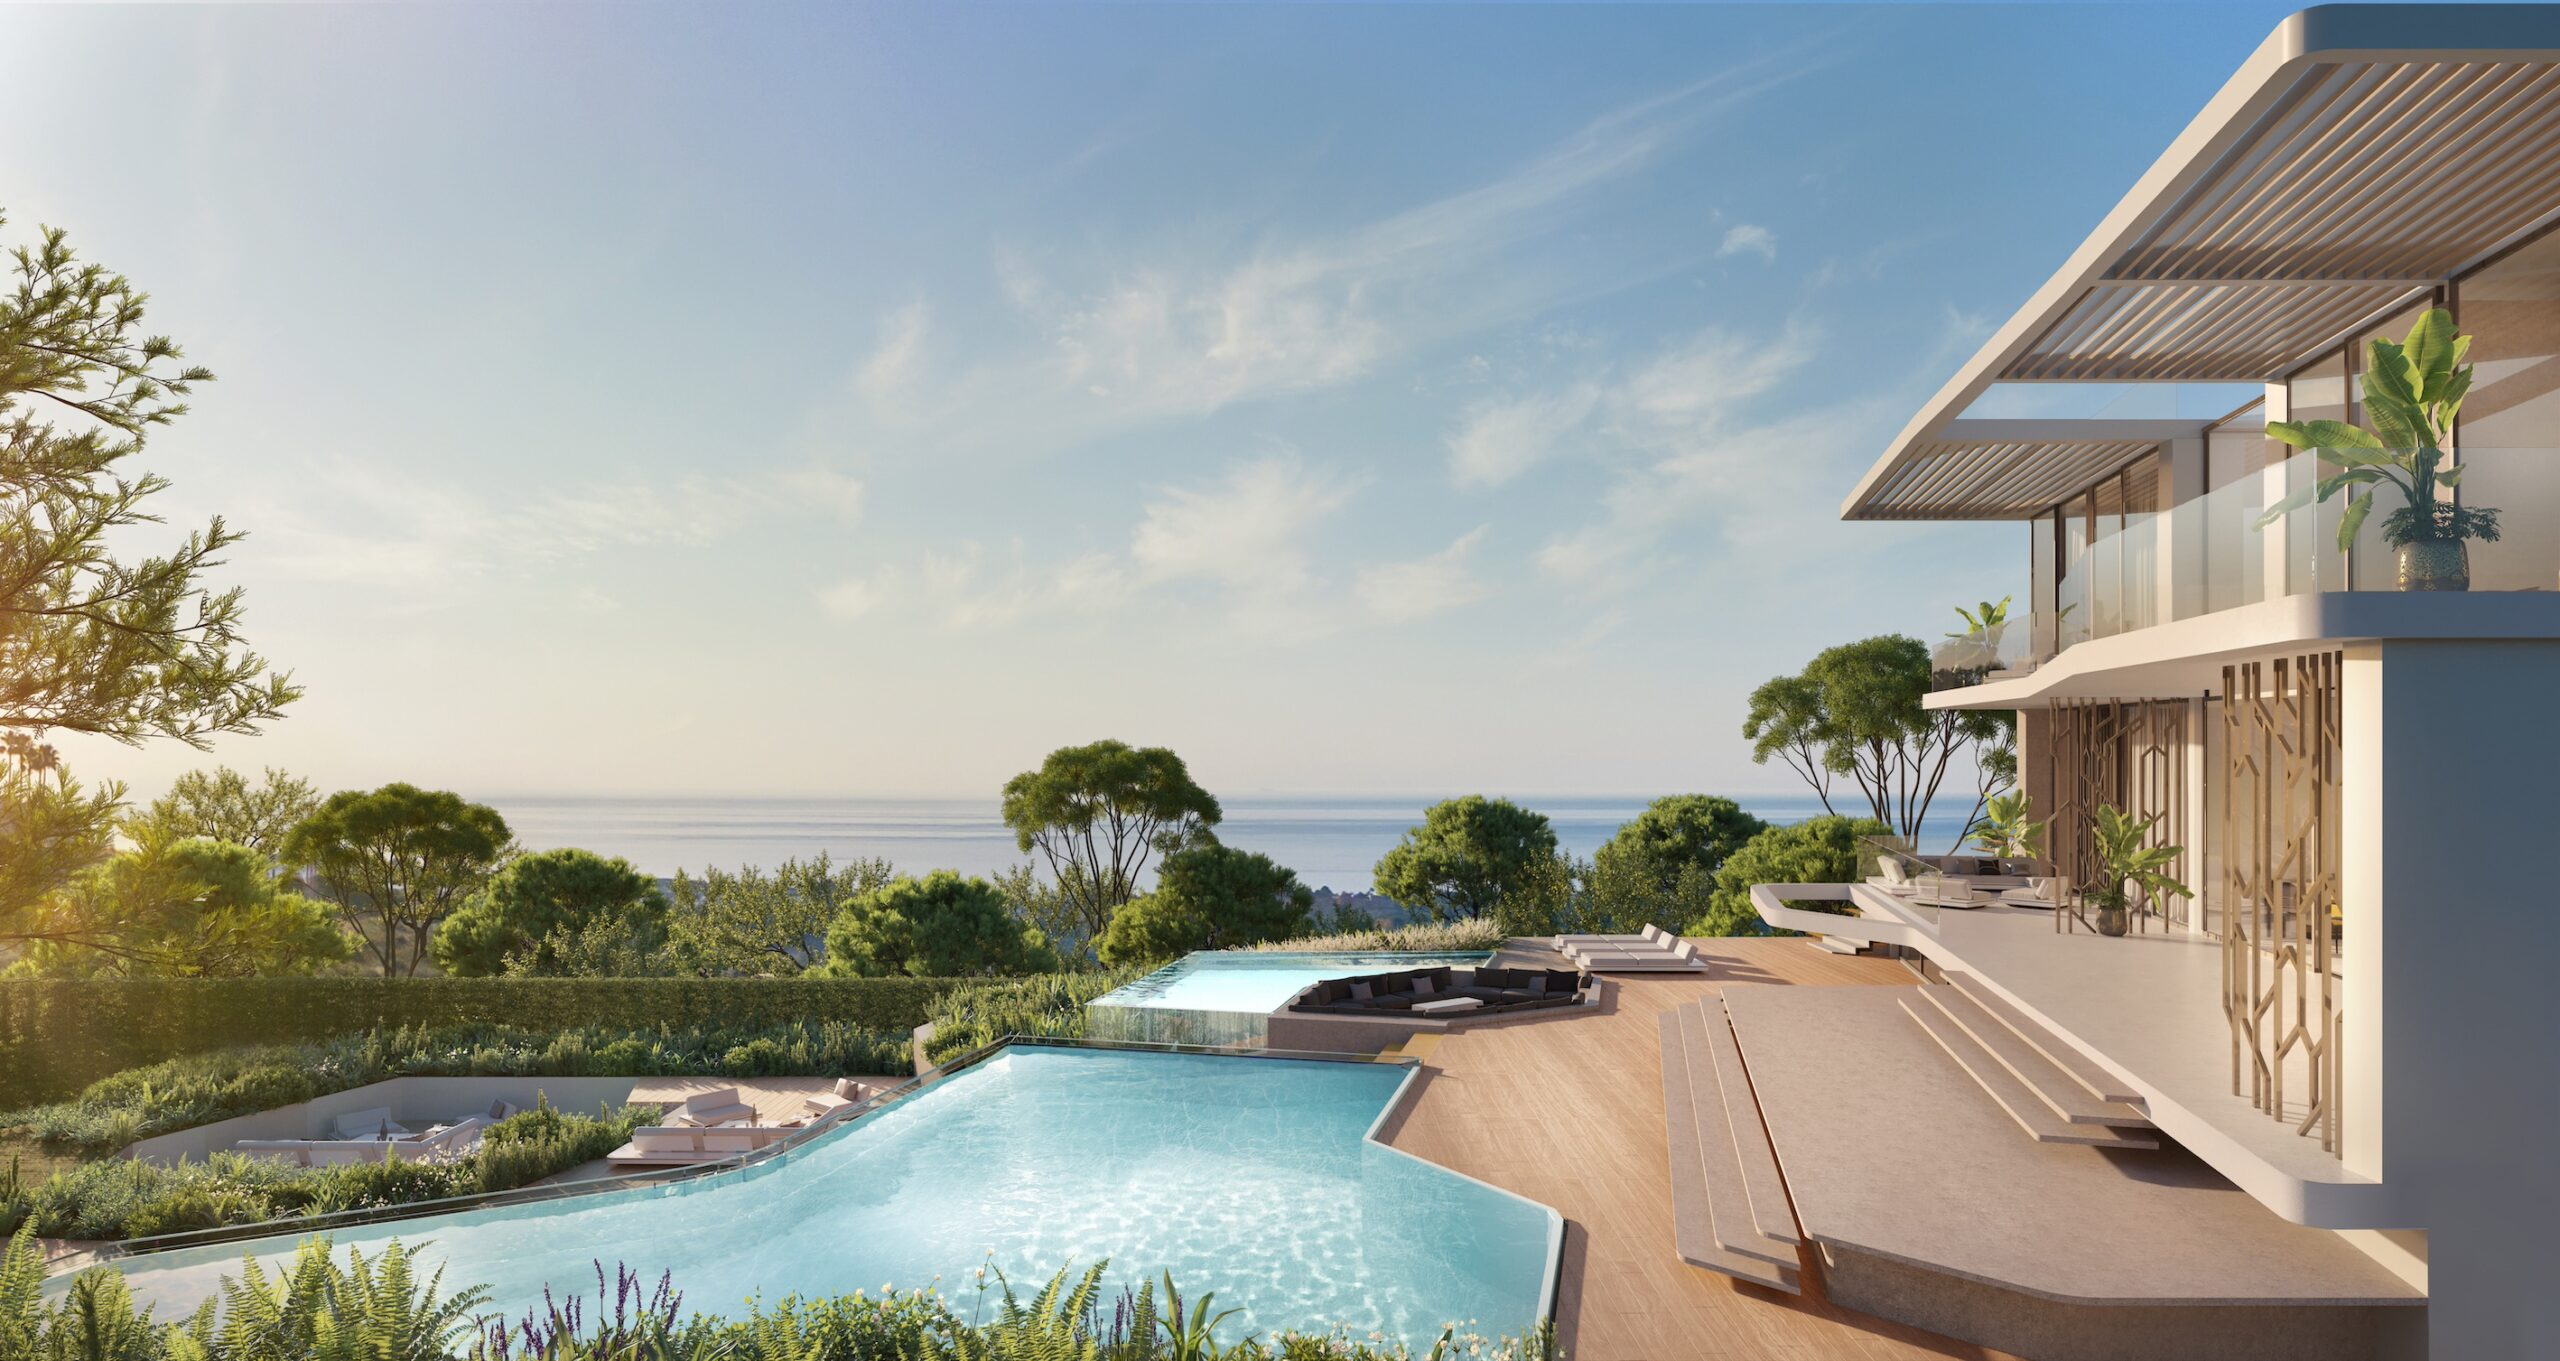 Erstklassige Bauvorhaben an der Costa del Sol: Ein Luxus-Führer